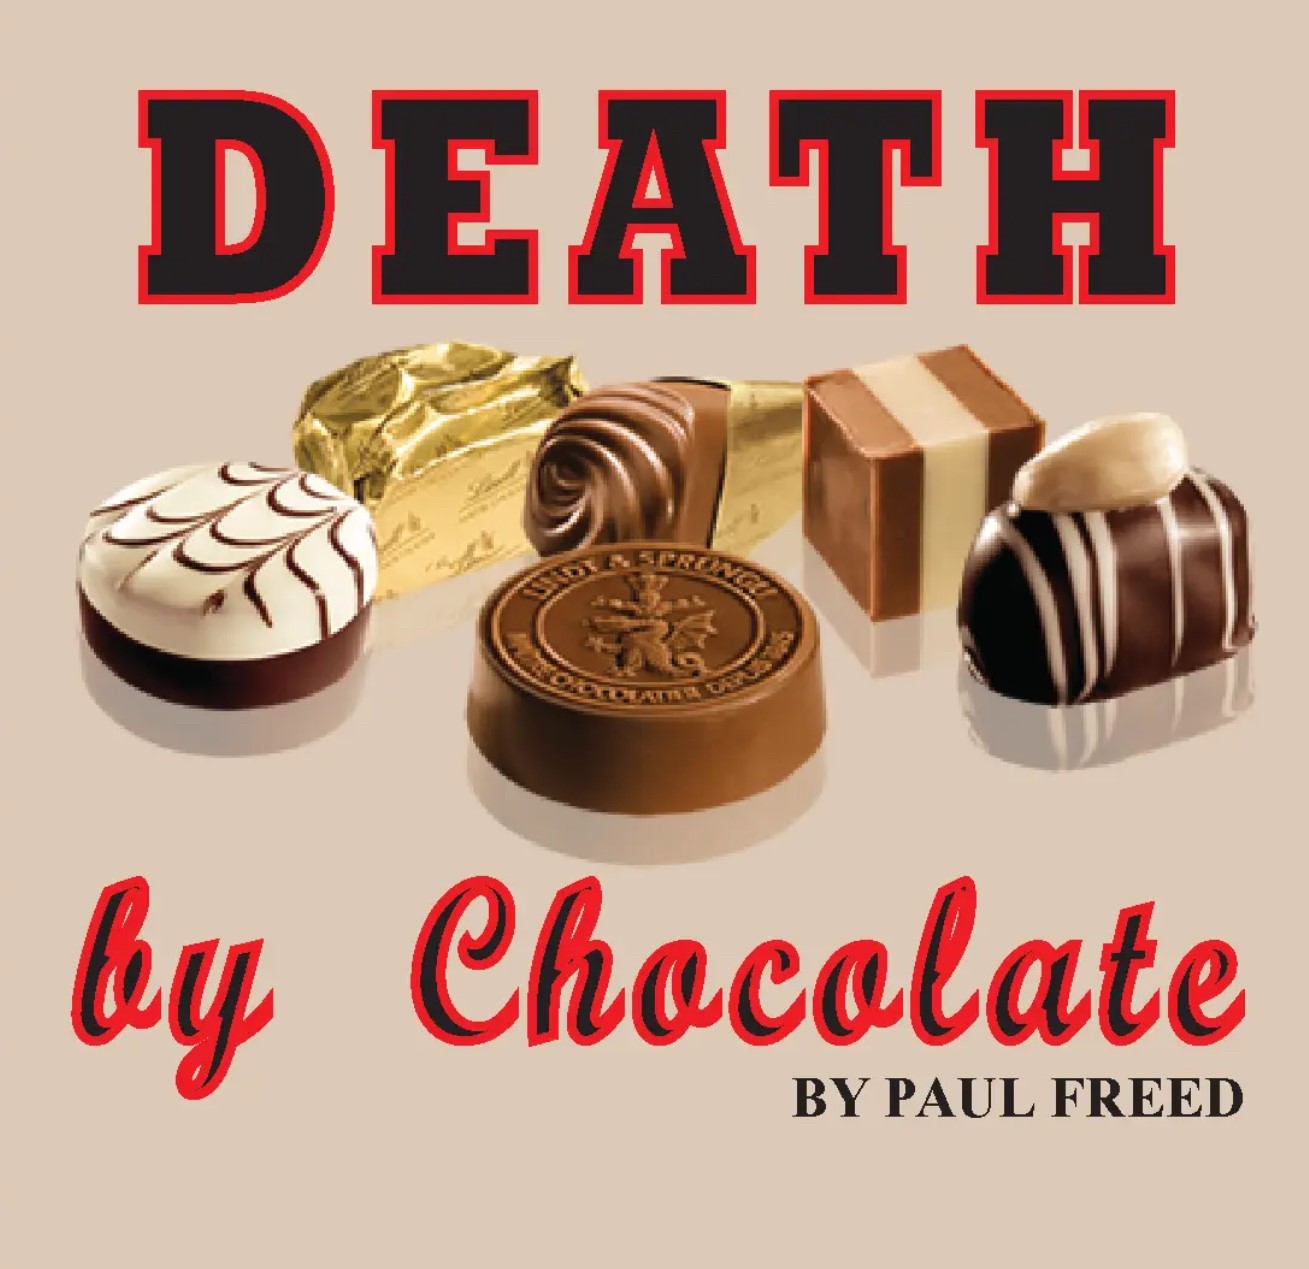 Death by Chocolate by Paul Freed on may. 09, 19:00@Area Community Theatre - Elegir asientoCompra entradas y obtén información entomahact.com 